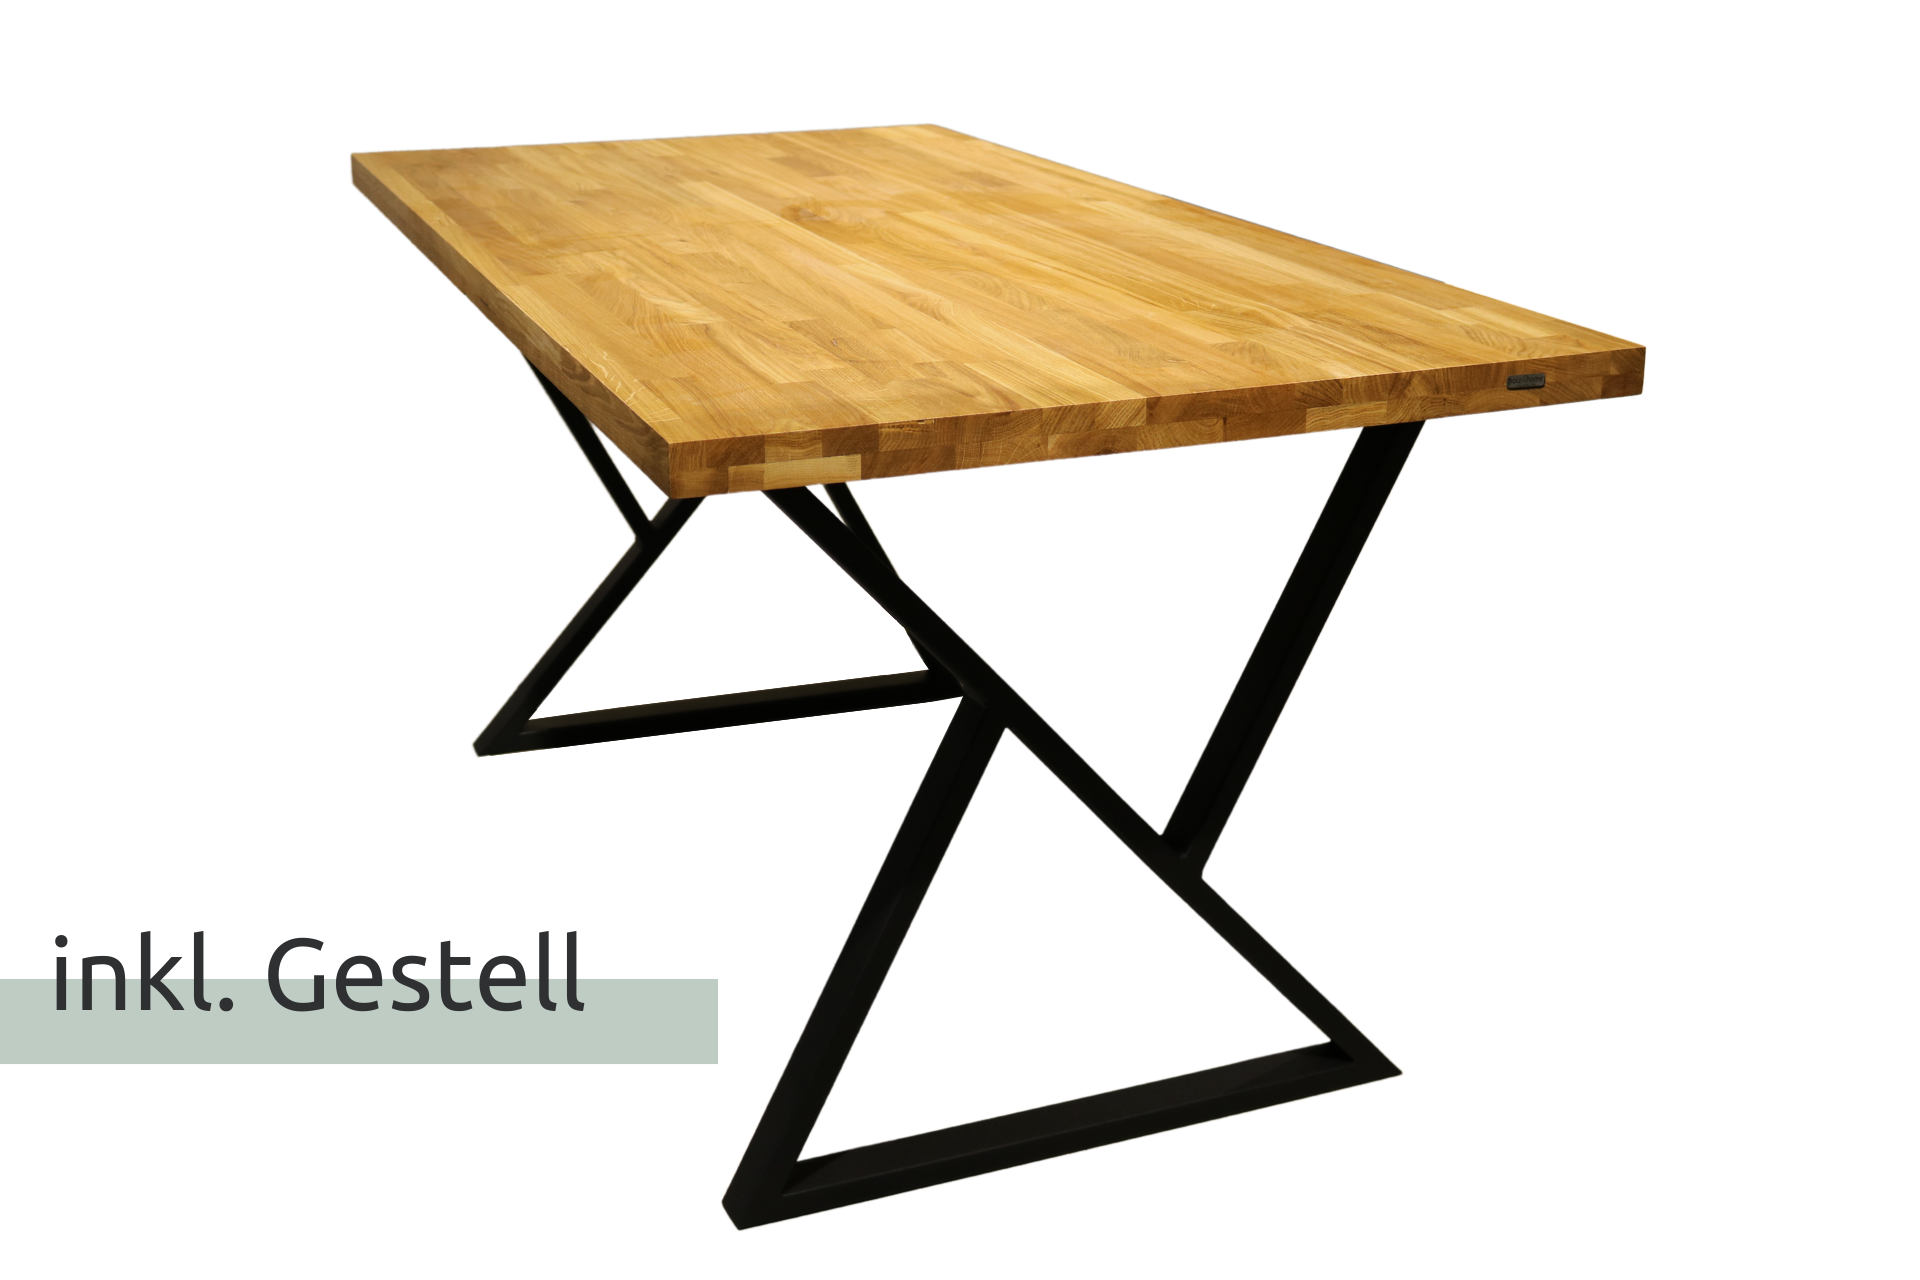 Tischplatte 200 x 100 cm ohne Baumkante aus massiver Eiche mit Aufdopplung am Rand - Doppel-Dreieck Gestell